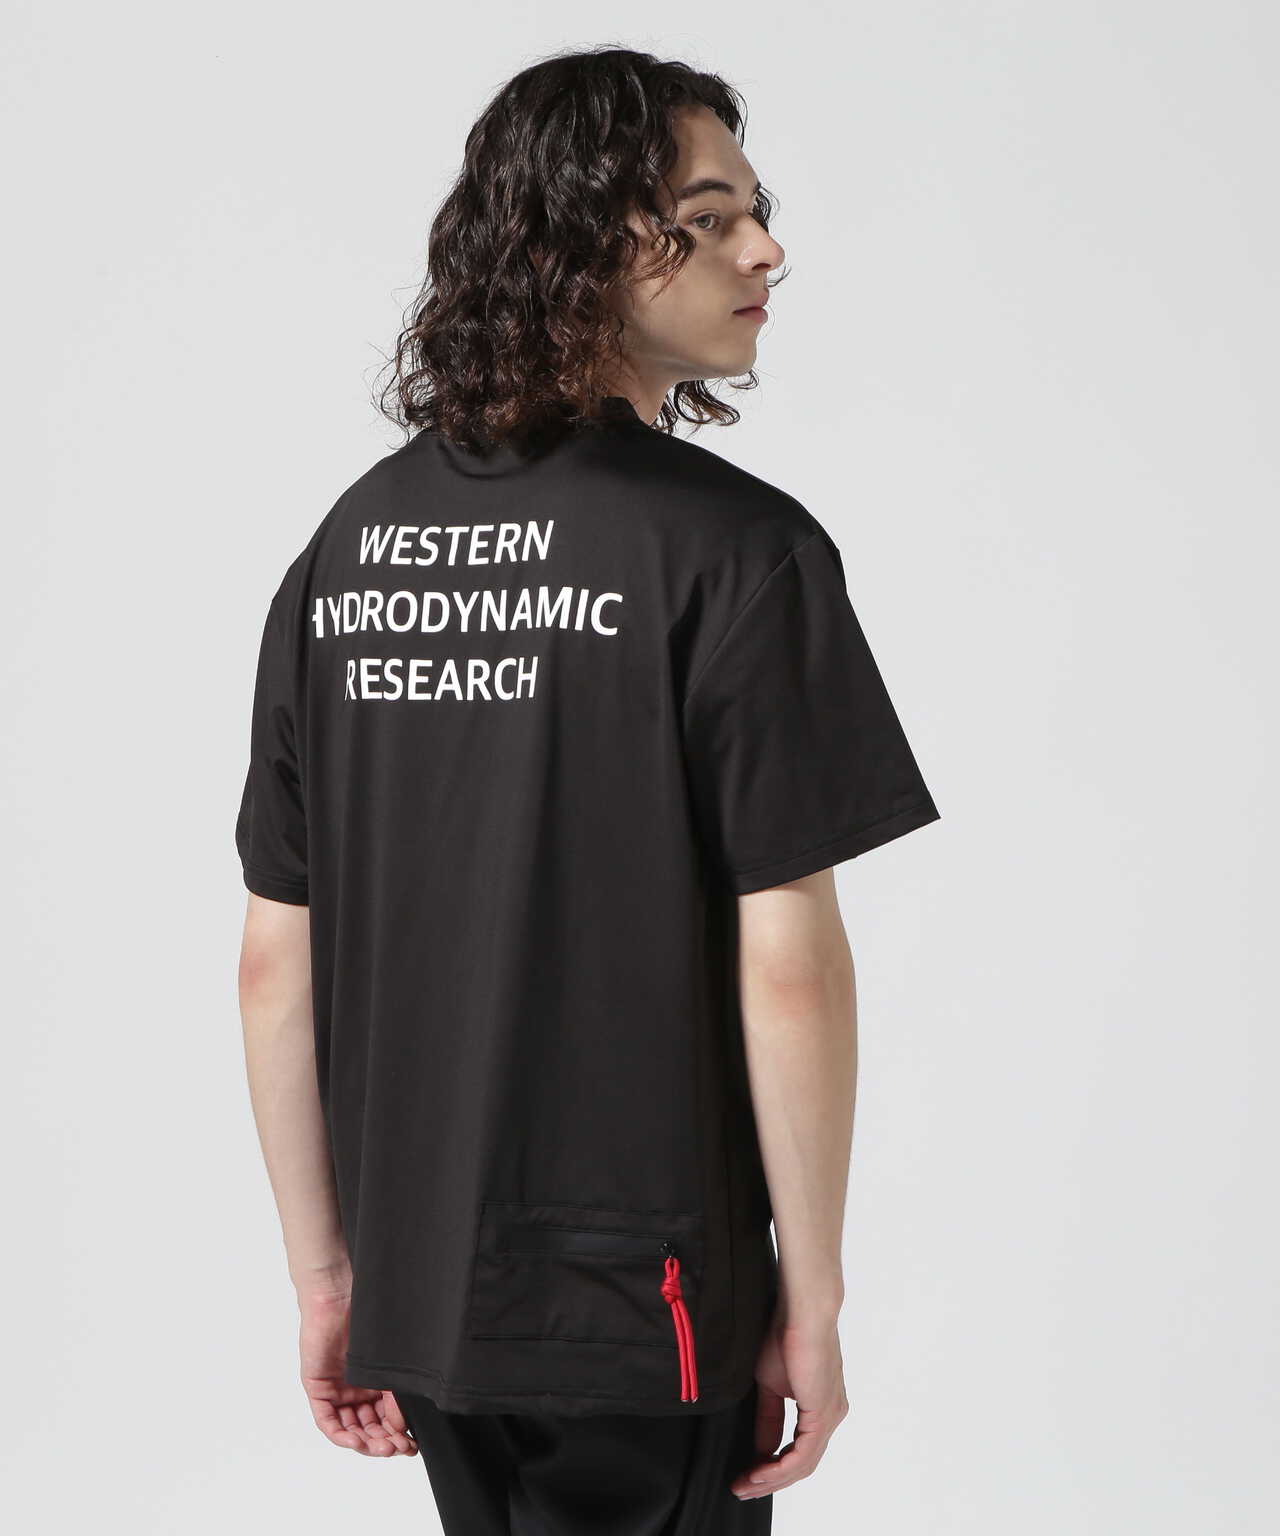 WESTERN HYDRODYNDMIC RESEARCH  Tシャツ